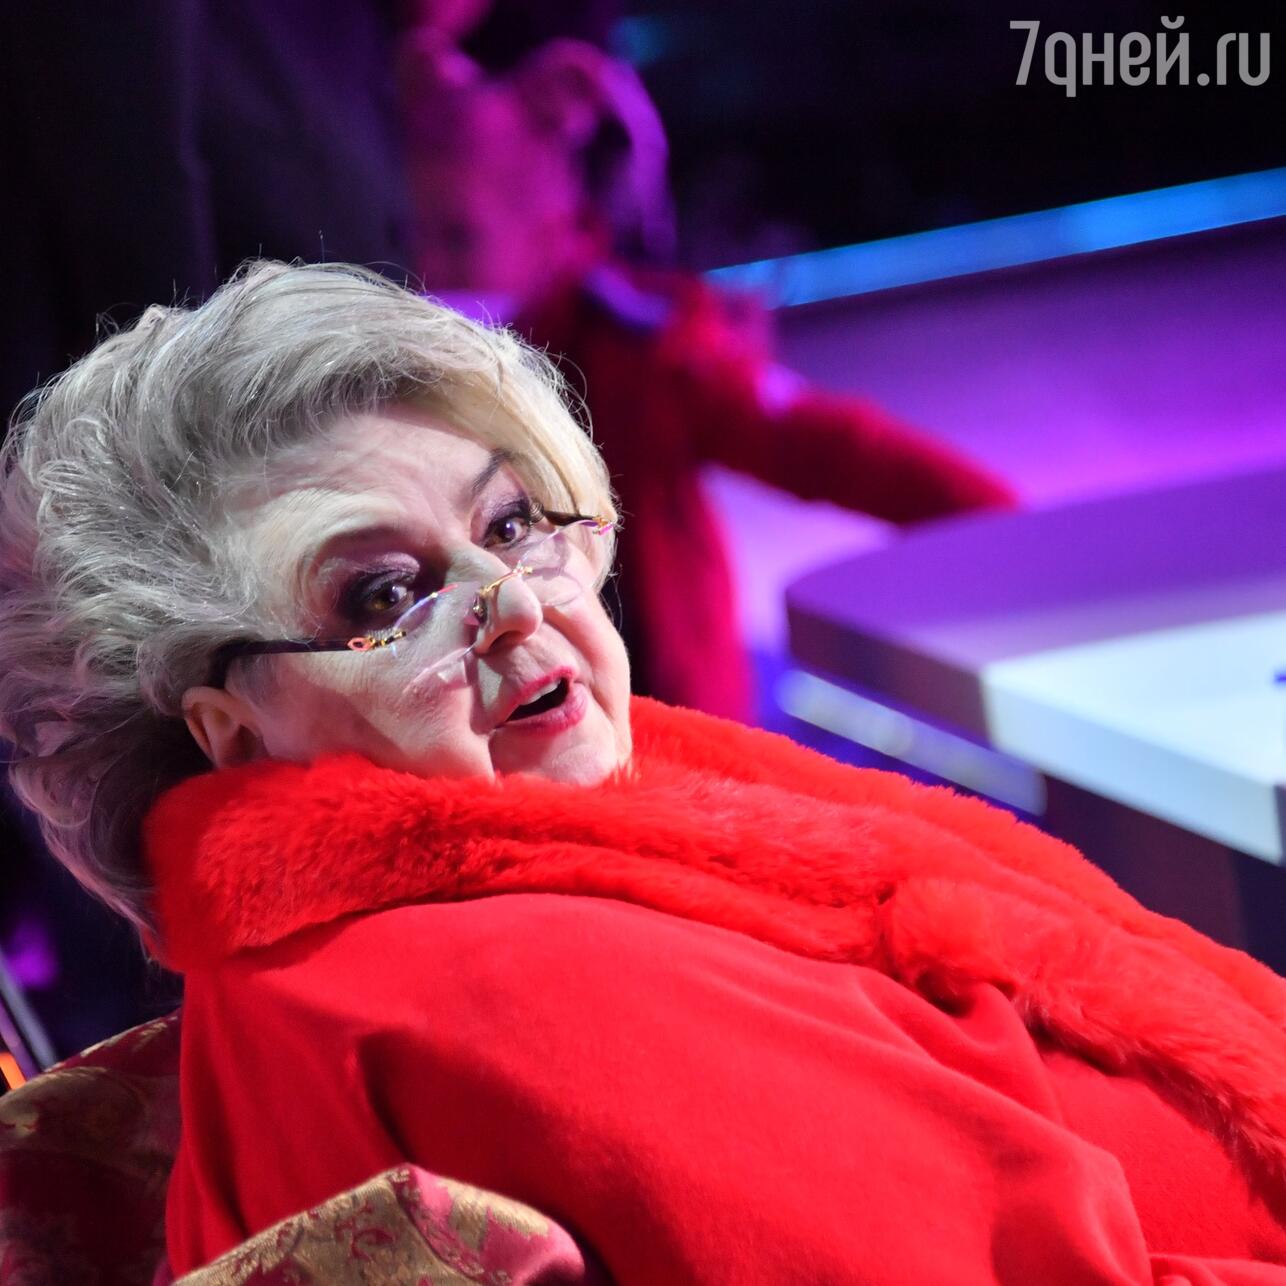 Тарасова потеряла сознание: её состояние ухудшается с каждым днём - 7Дней.ру